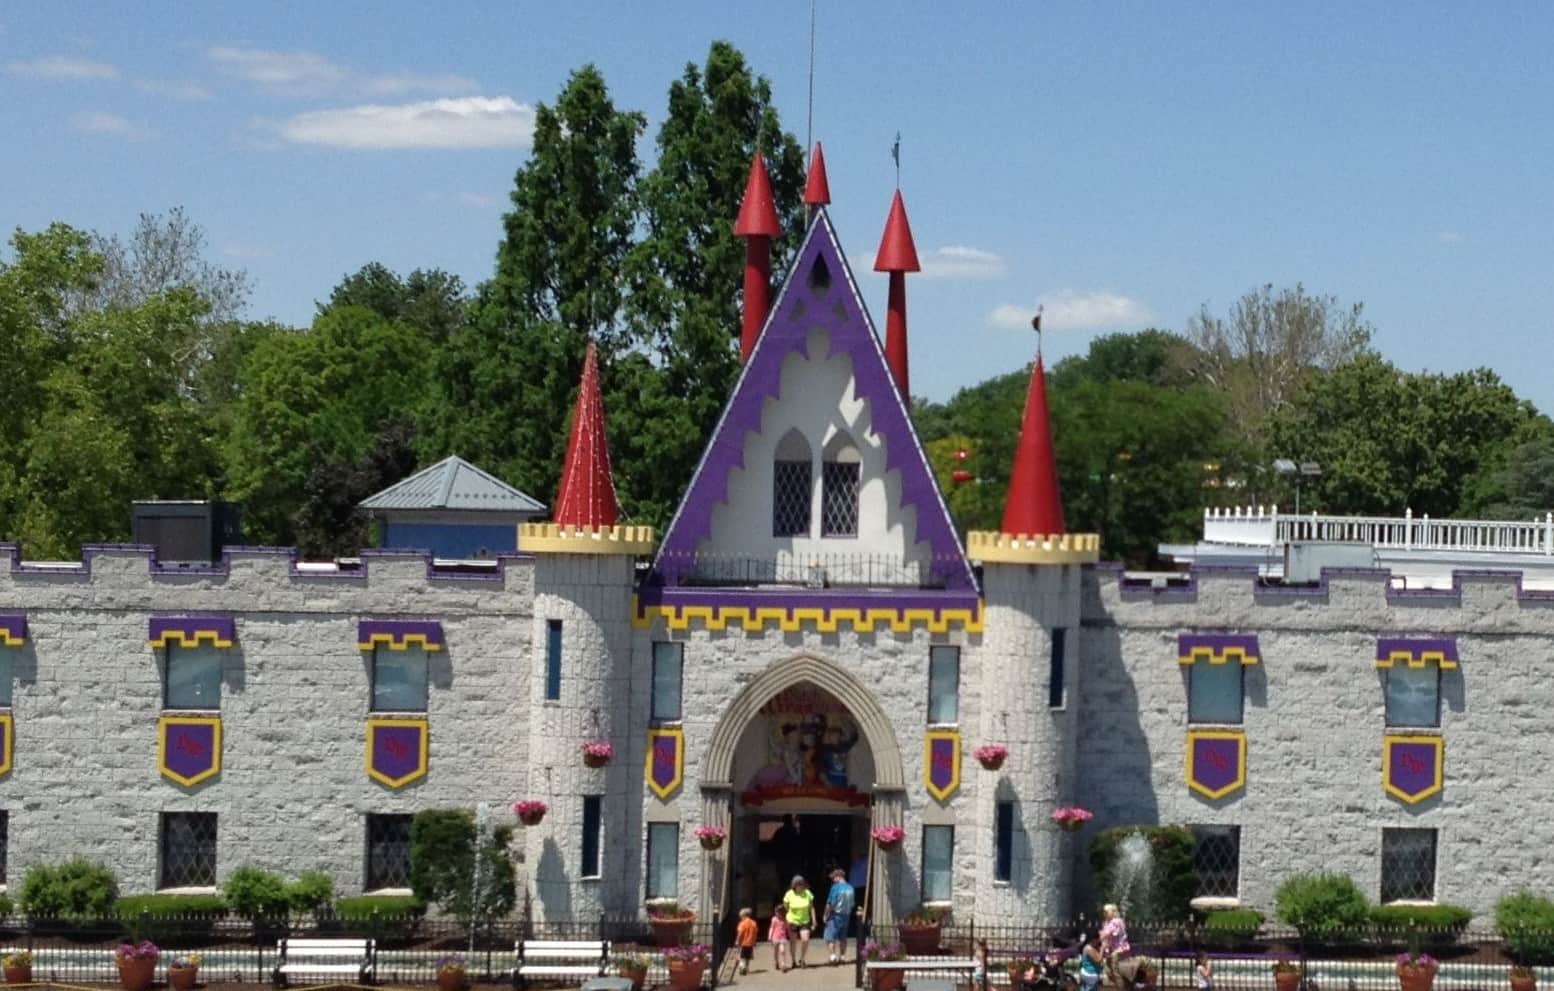 Visting Dutch Wonderland Family Amusement Park A Great Family Destination